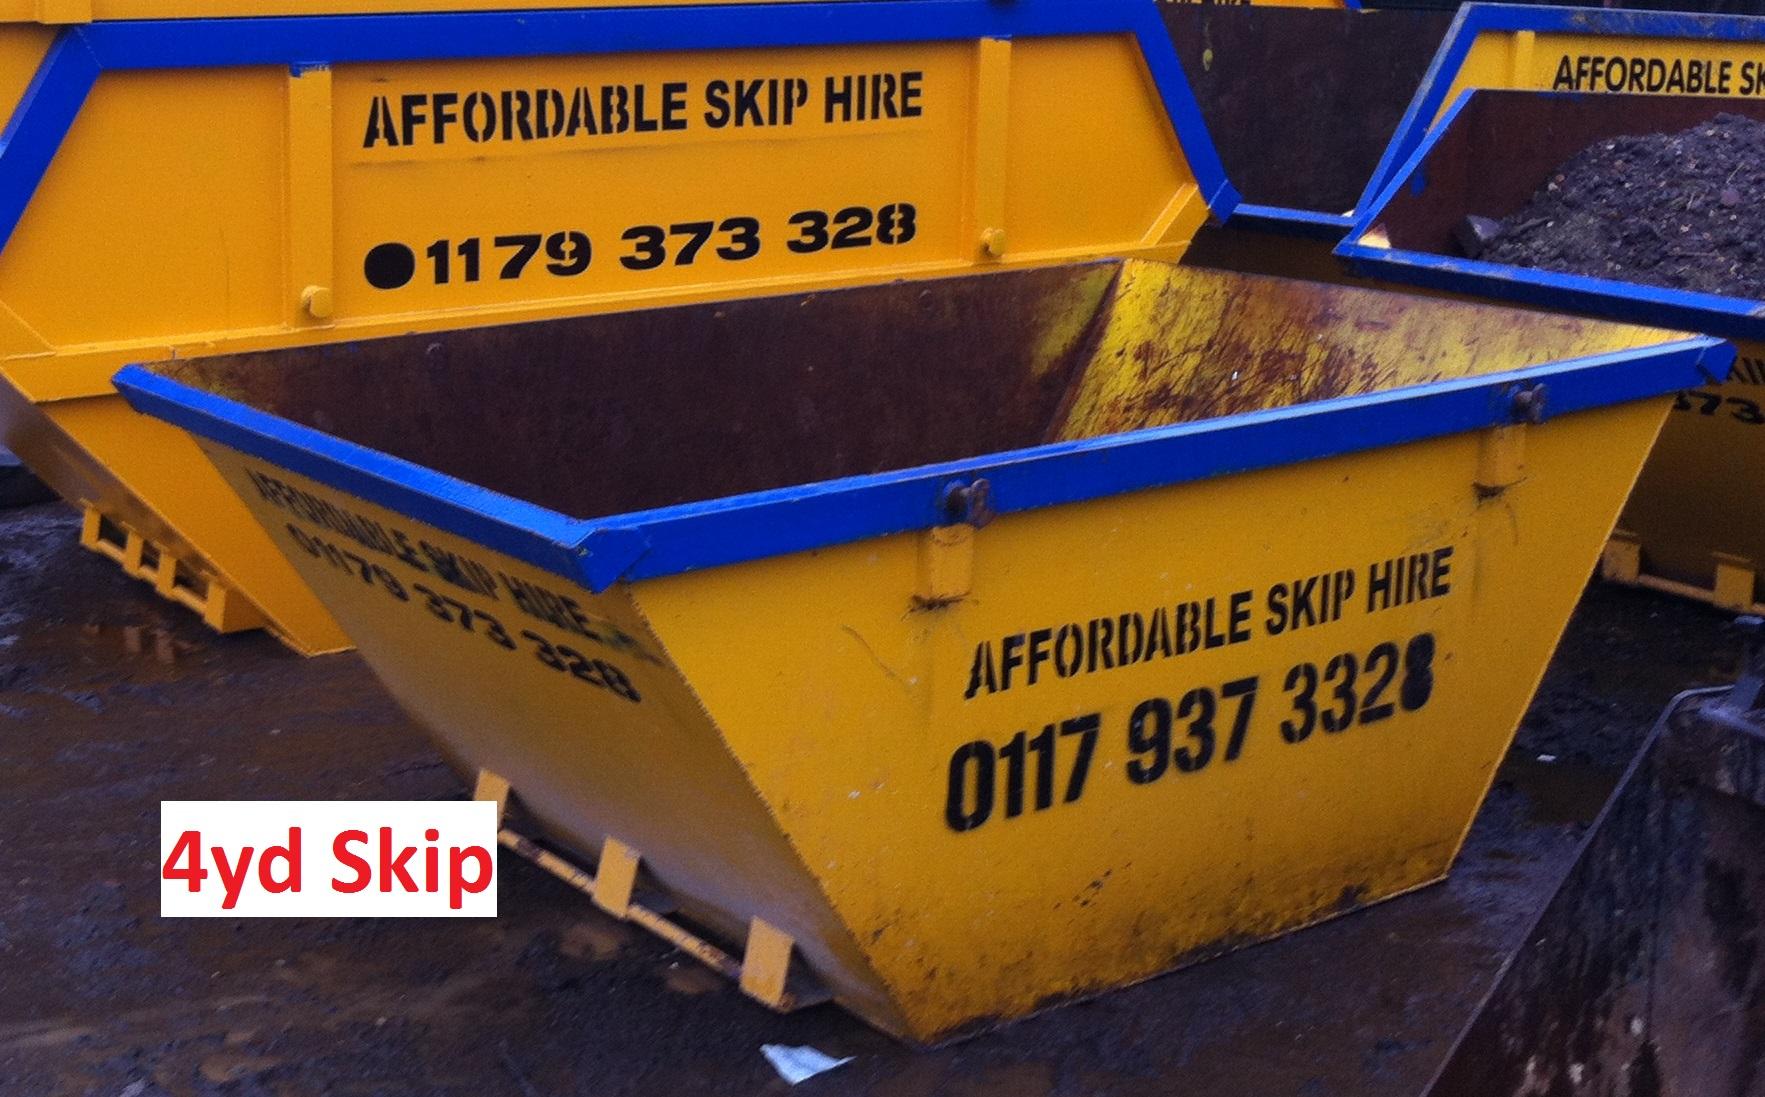 Images Affordable Skip Hire Bristol Ltd